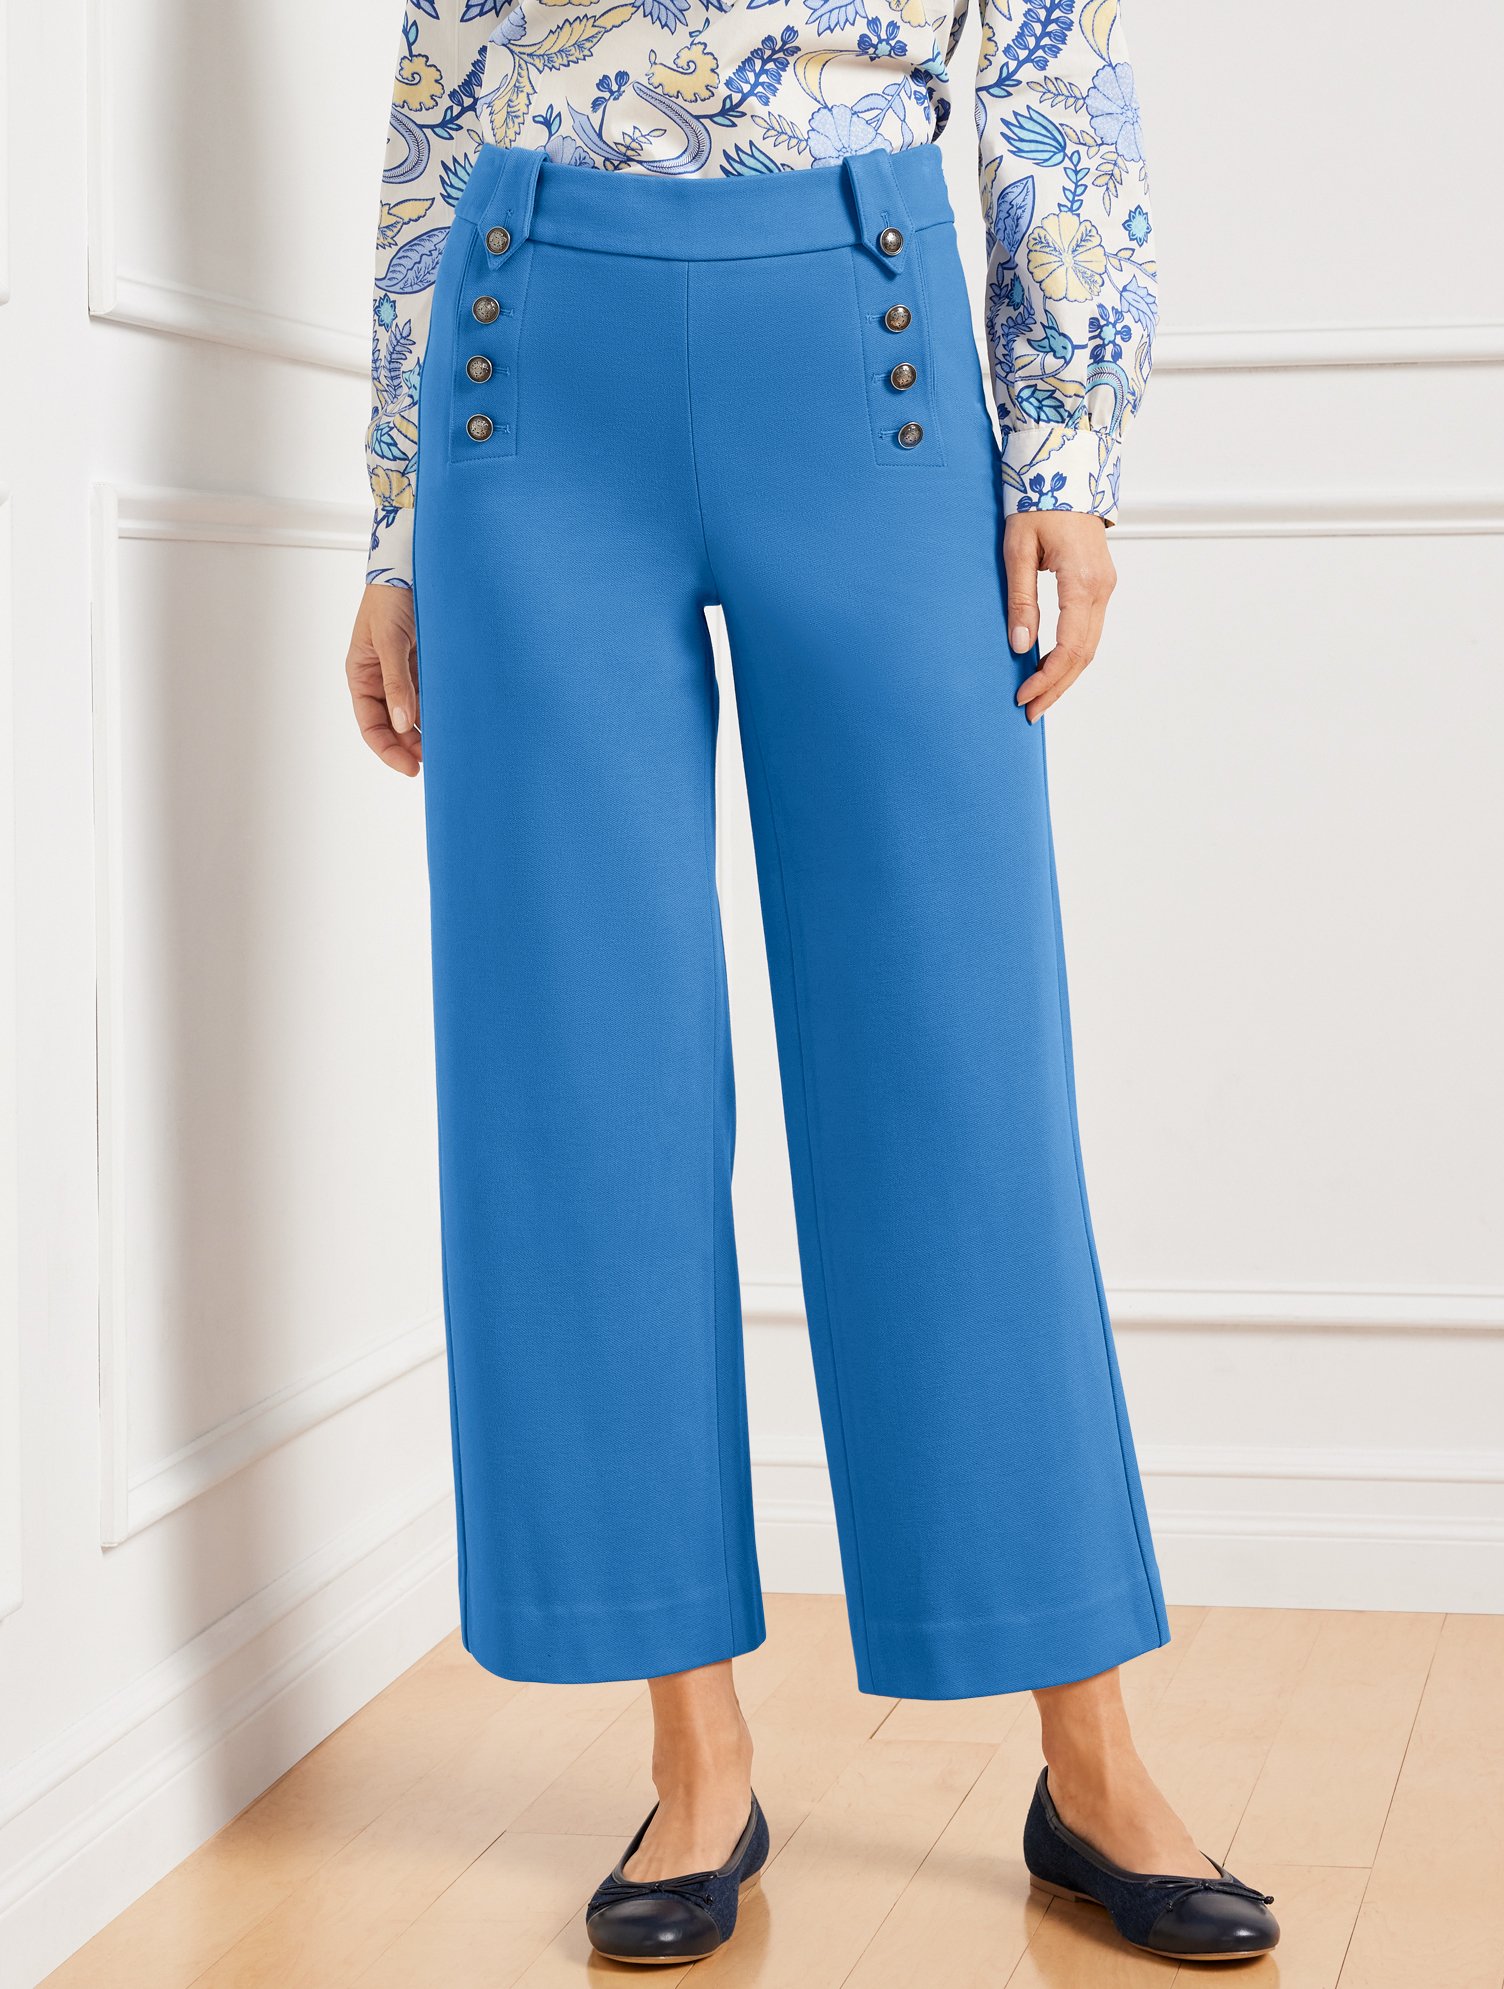 Talbots Knit Sailor Crop Pants - Capri Blue - 18